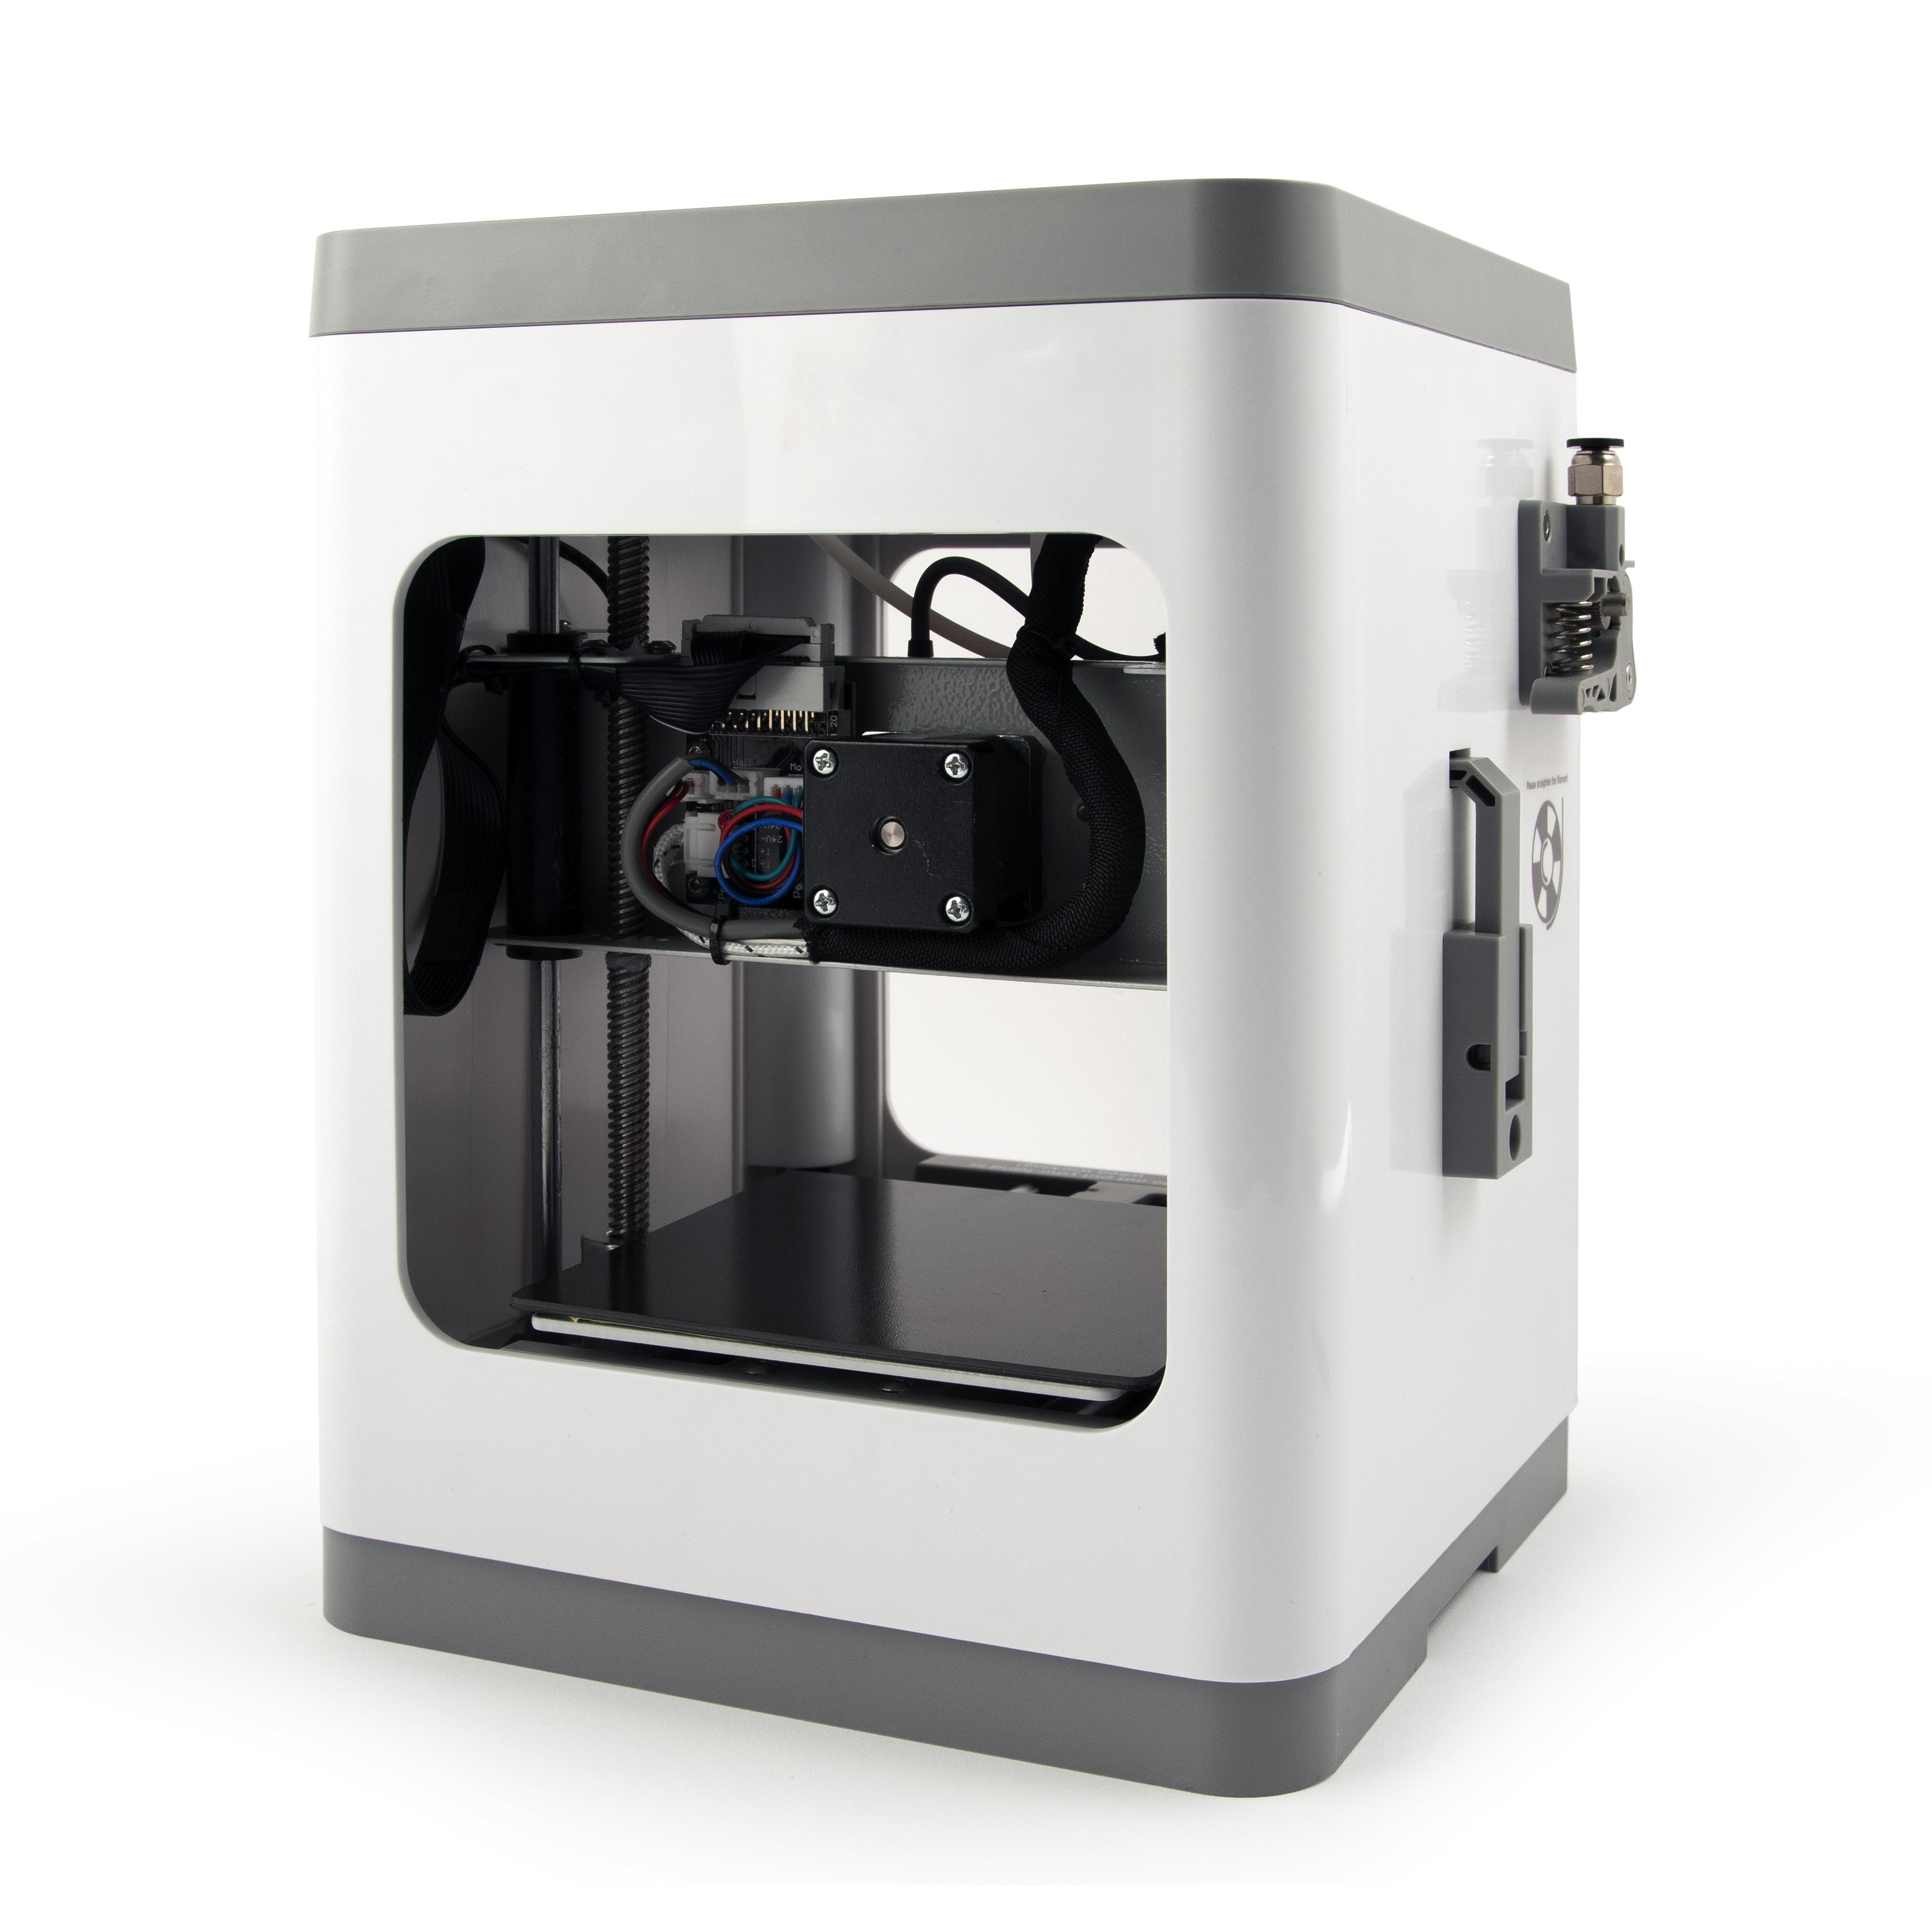 Gembird 3DP-GEMMA Gemma 3D Printer